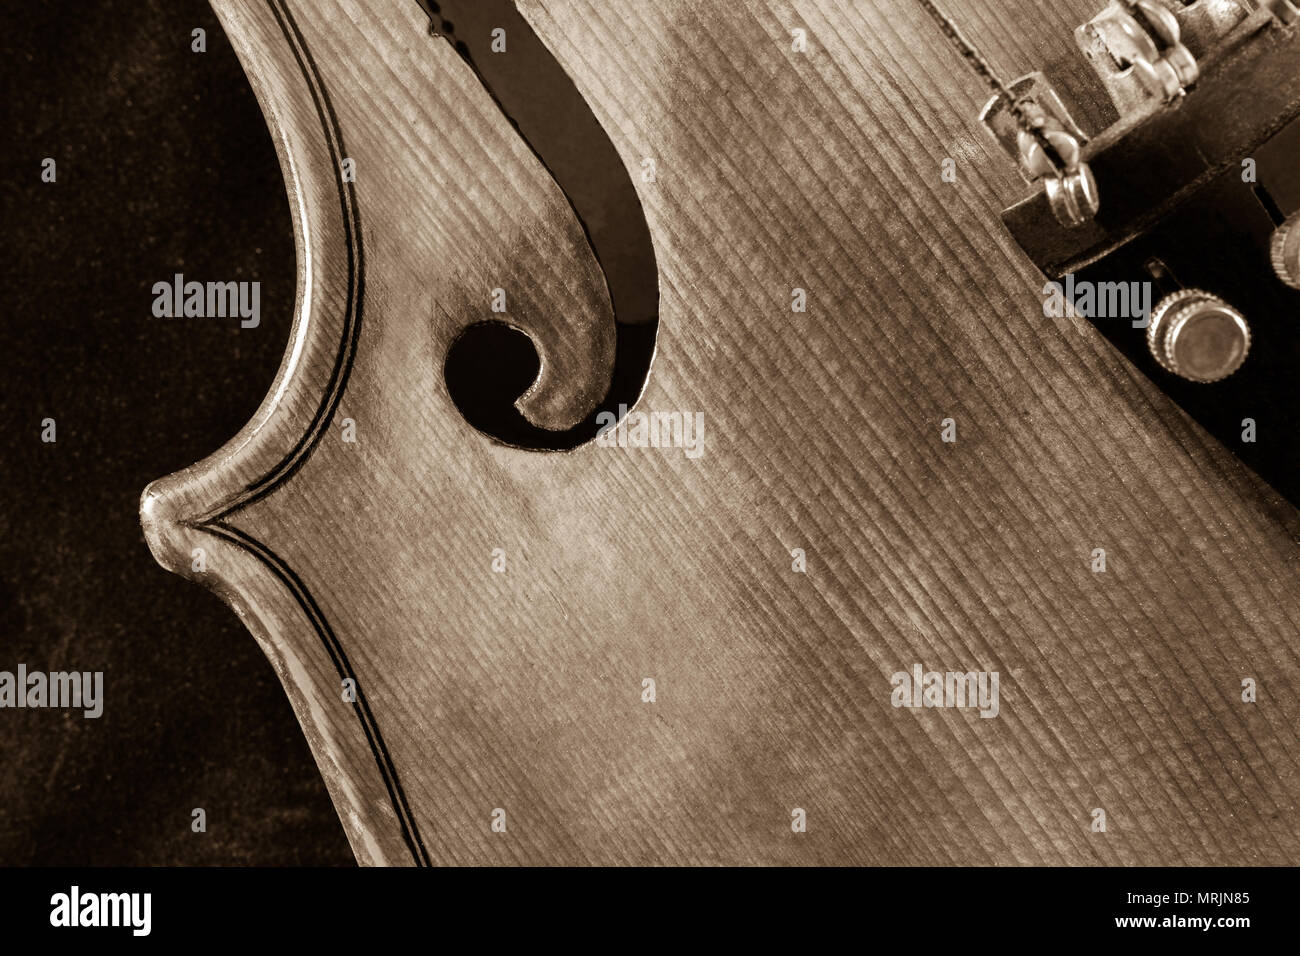 Violine close-up von oben in sepia Ton gesehen Stockfoto